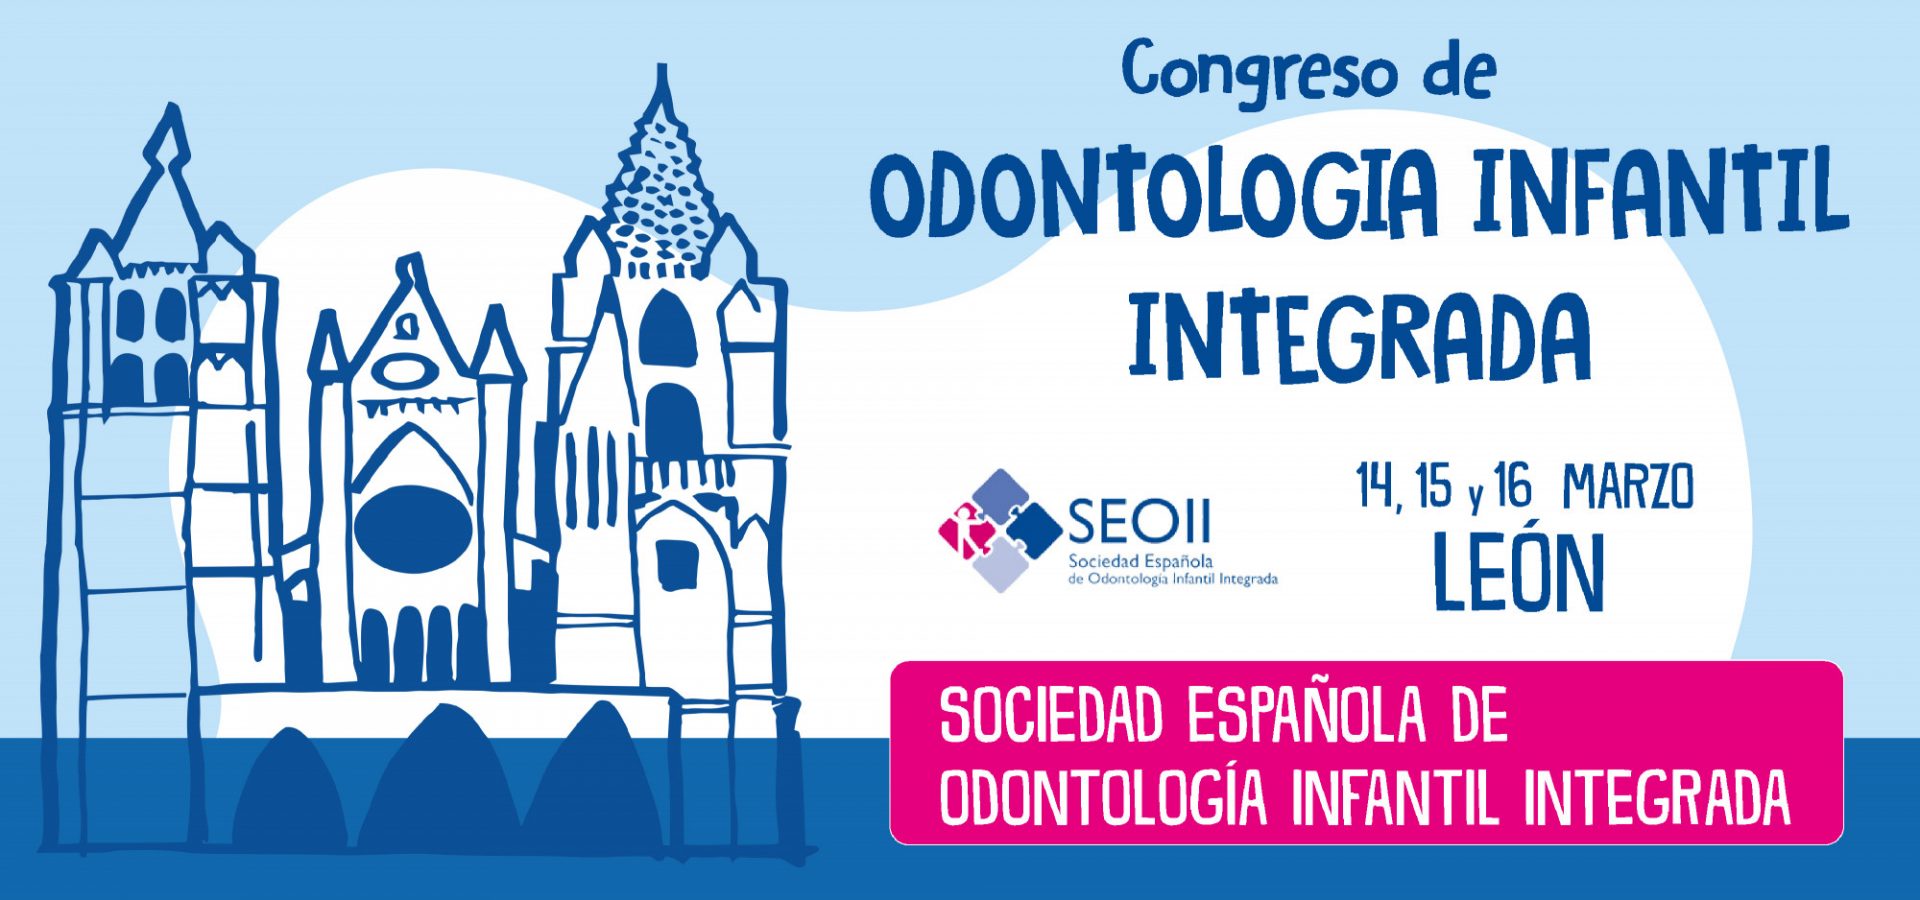 La Sociedad Española de Odontología Infantil Integrada celebra su XIII Congreso Nacional en León